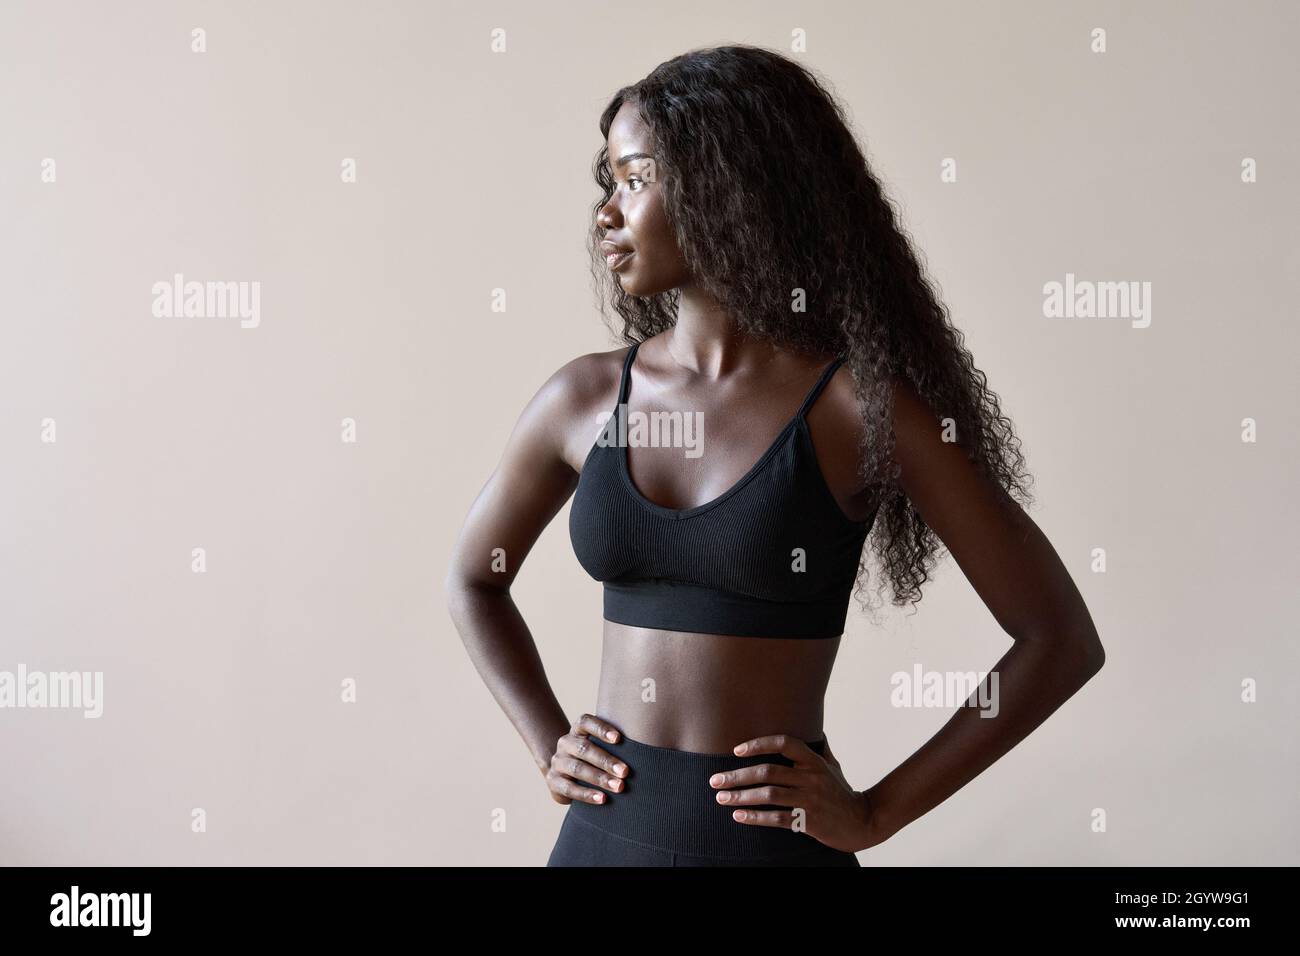 Junge fit gesunde afrikanische schwarze Frau auf graubraunem Hintergrund stehen. Stockfoto